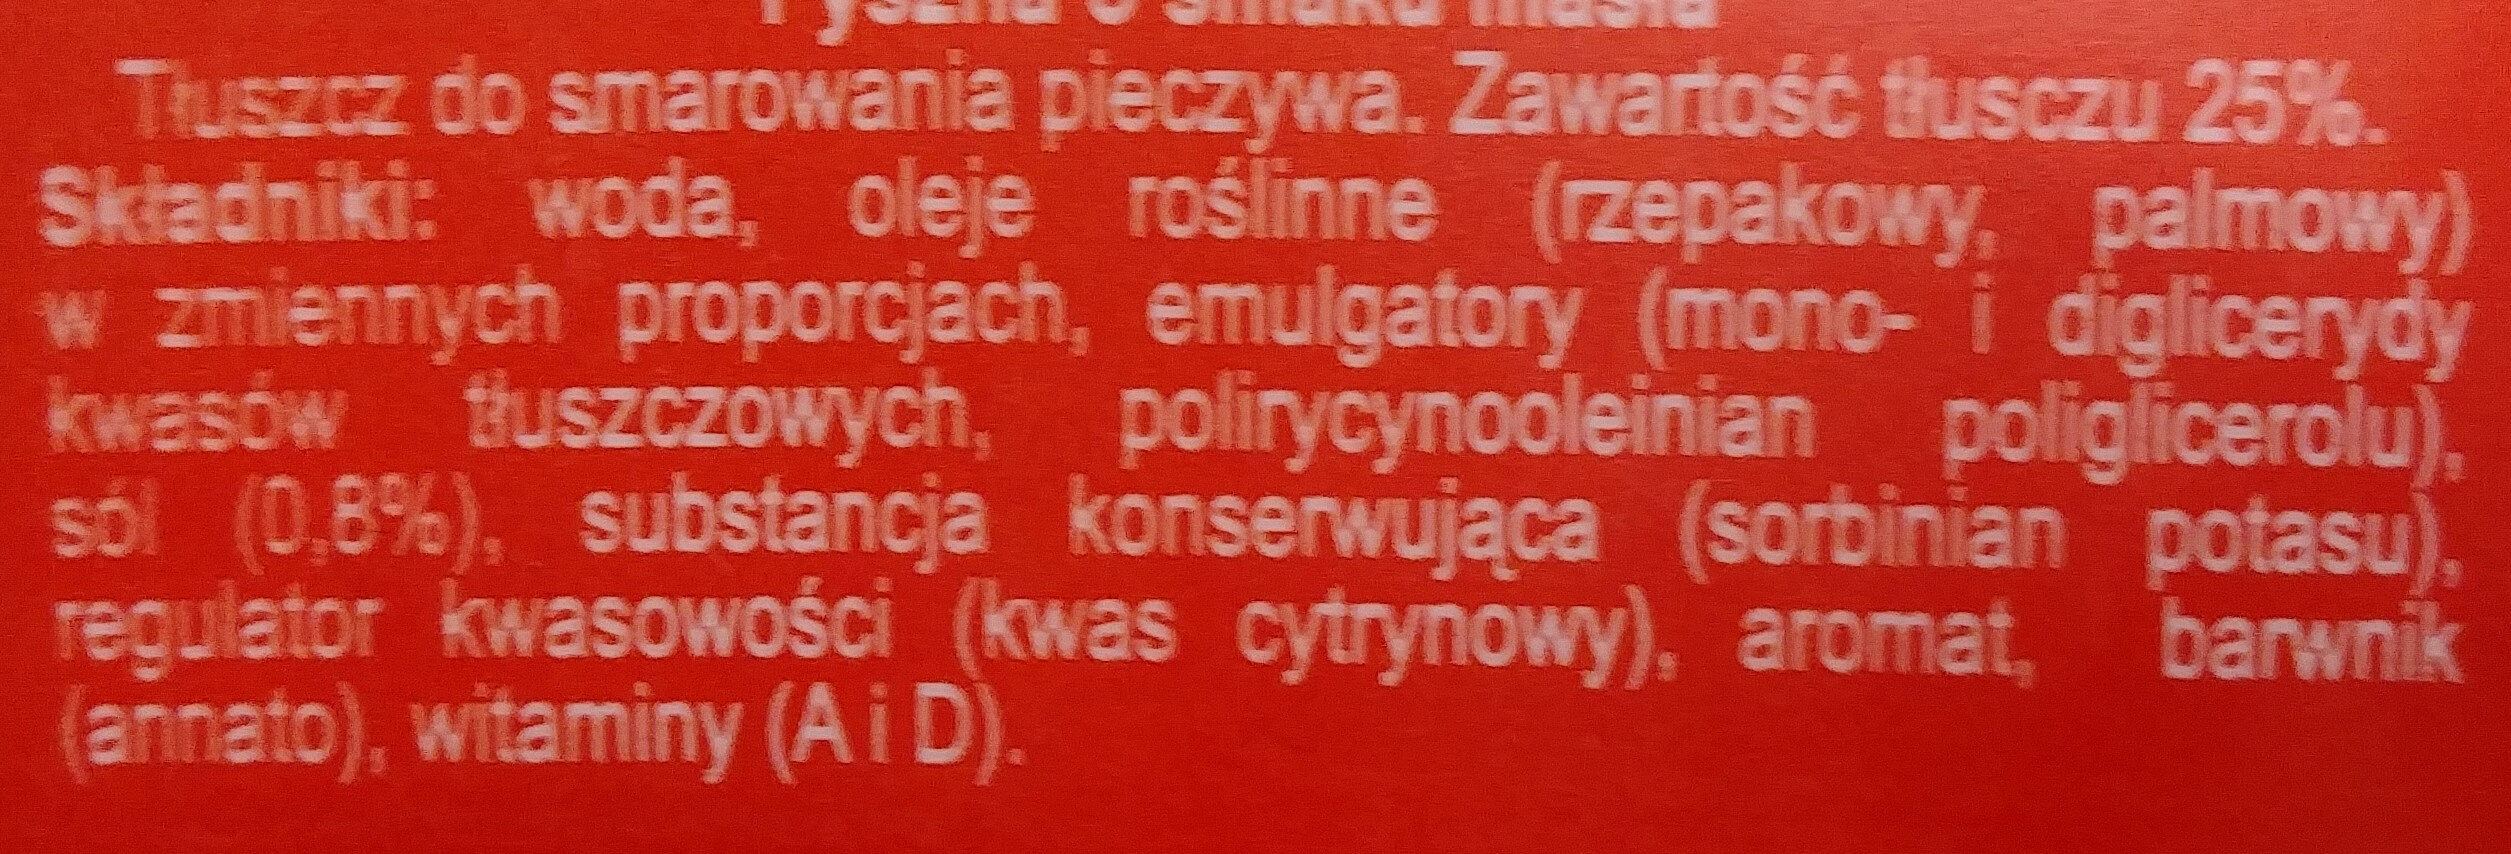 Margaryna Pyszna o smaku masła - Ingredienti - pl